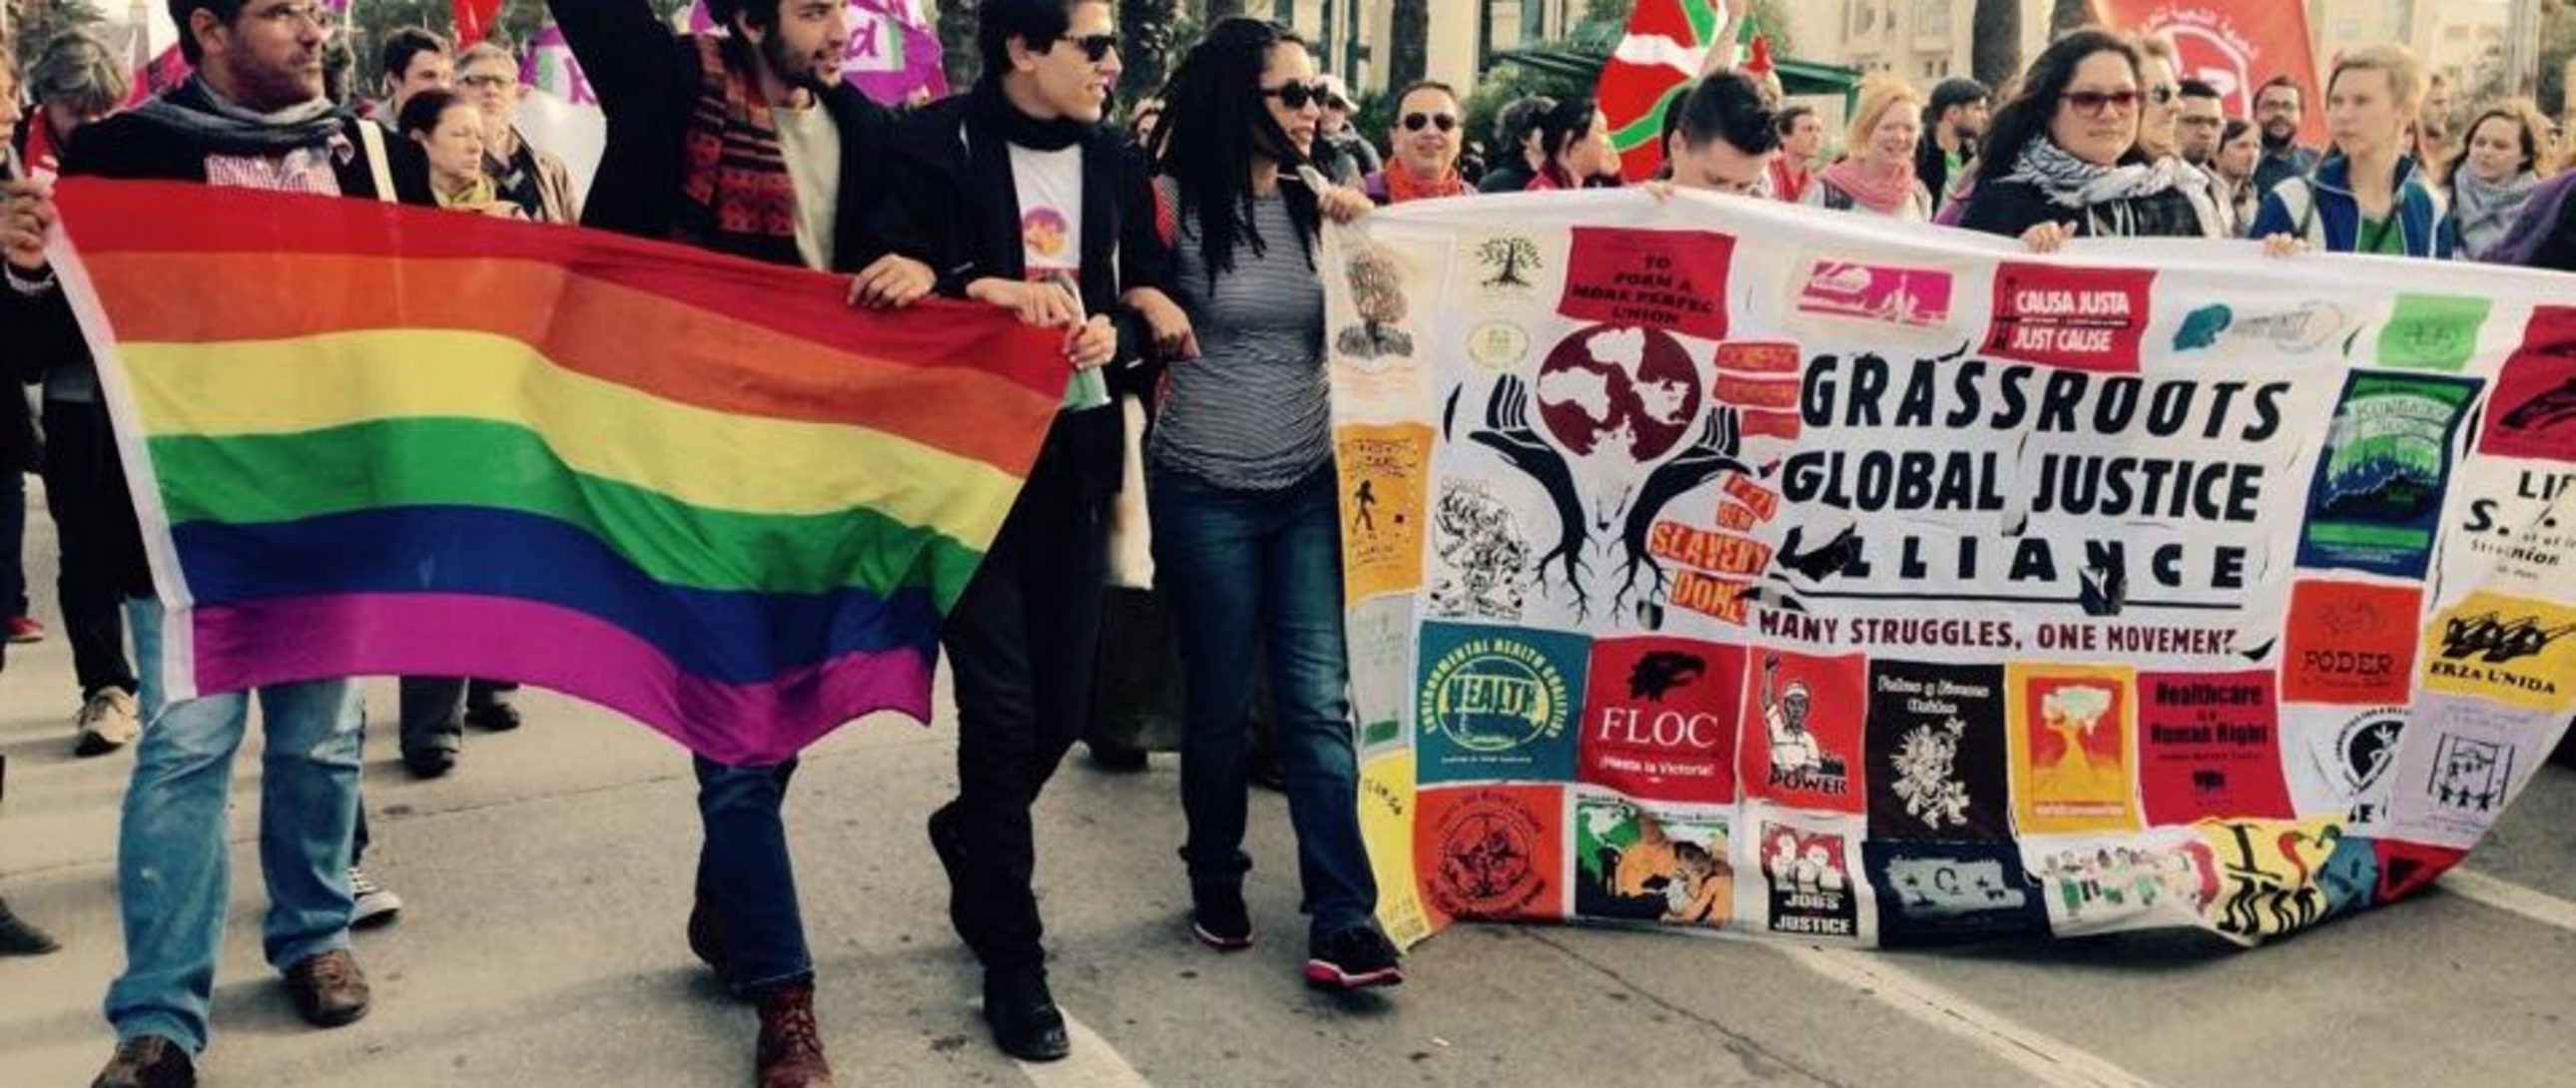 LGBTI march In Tunis, Tunisia